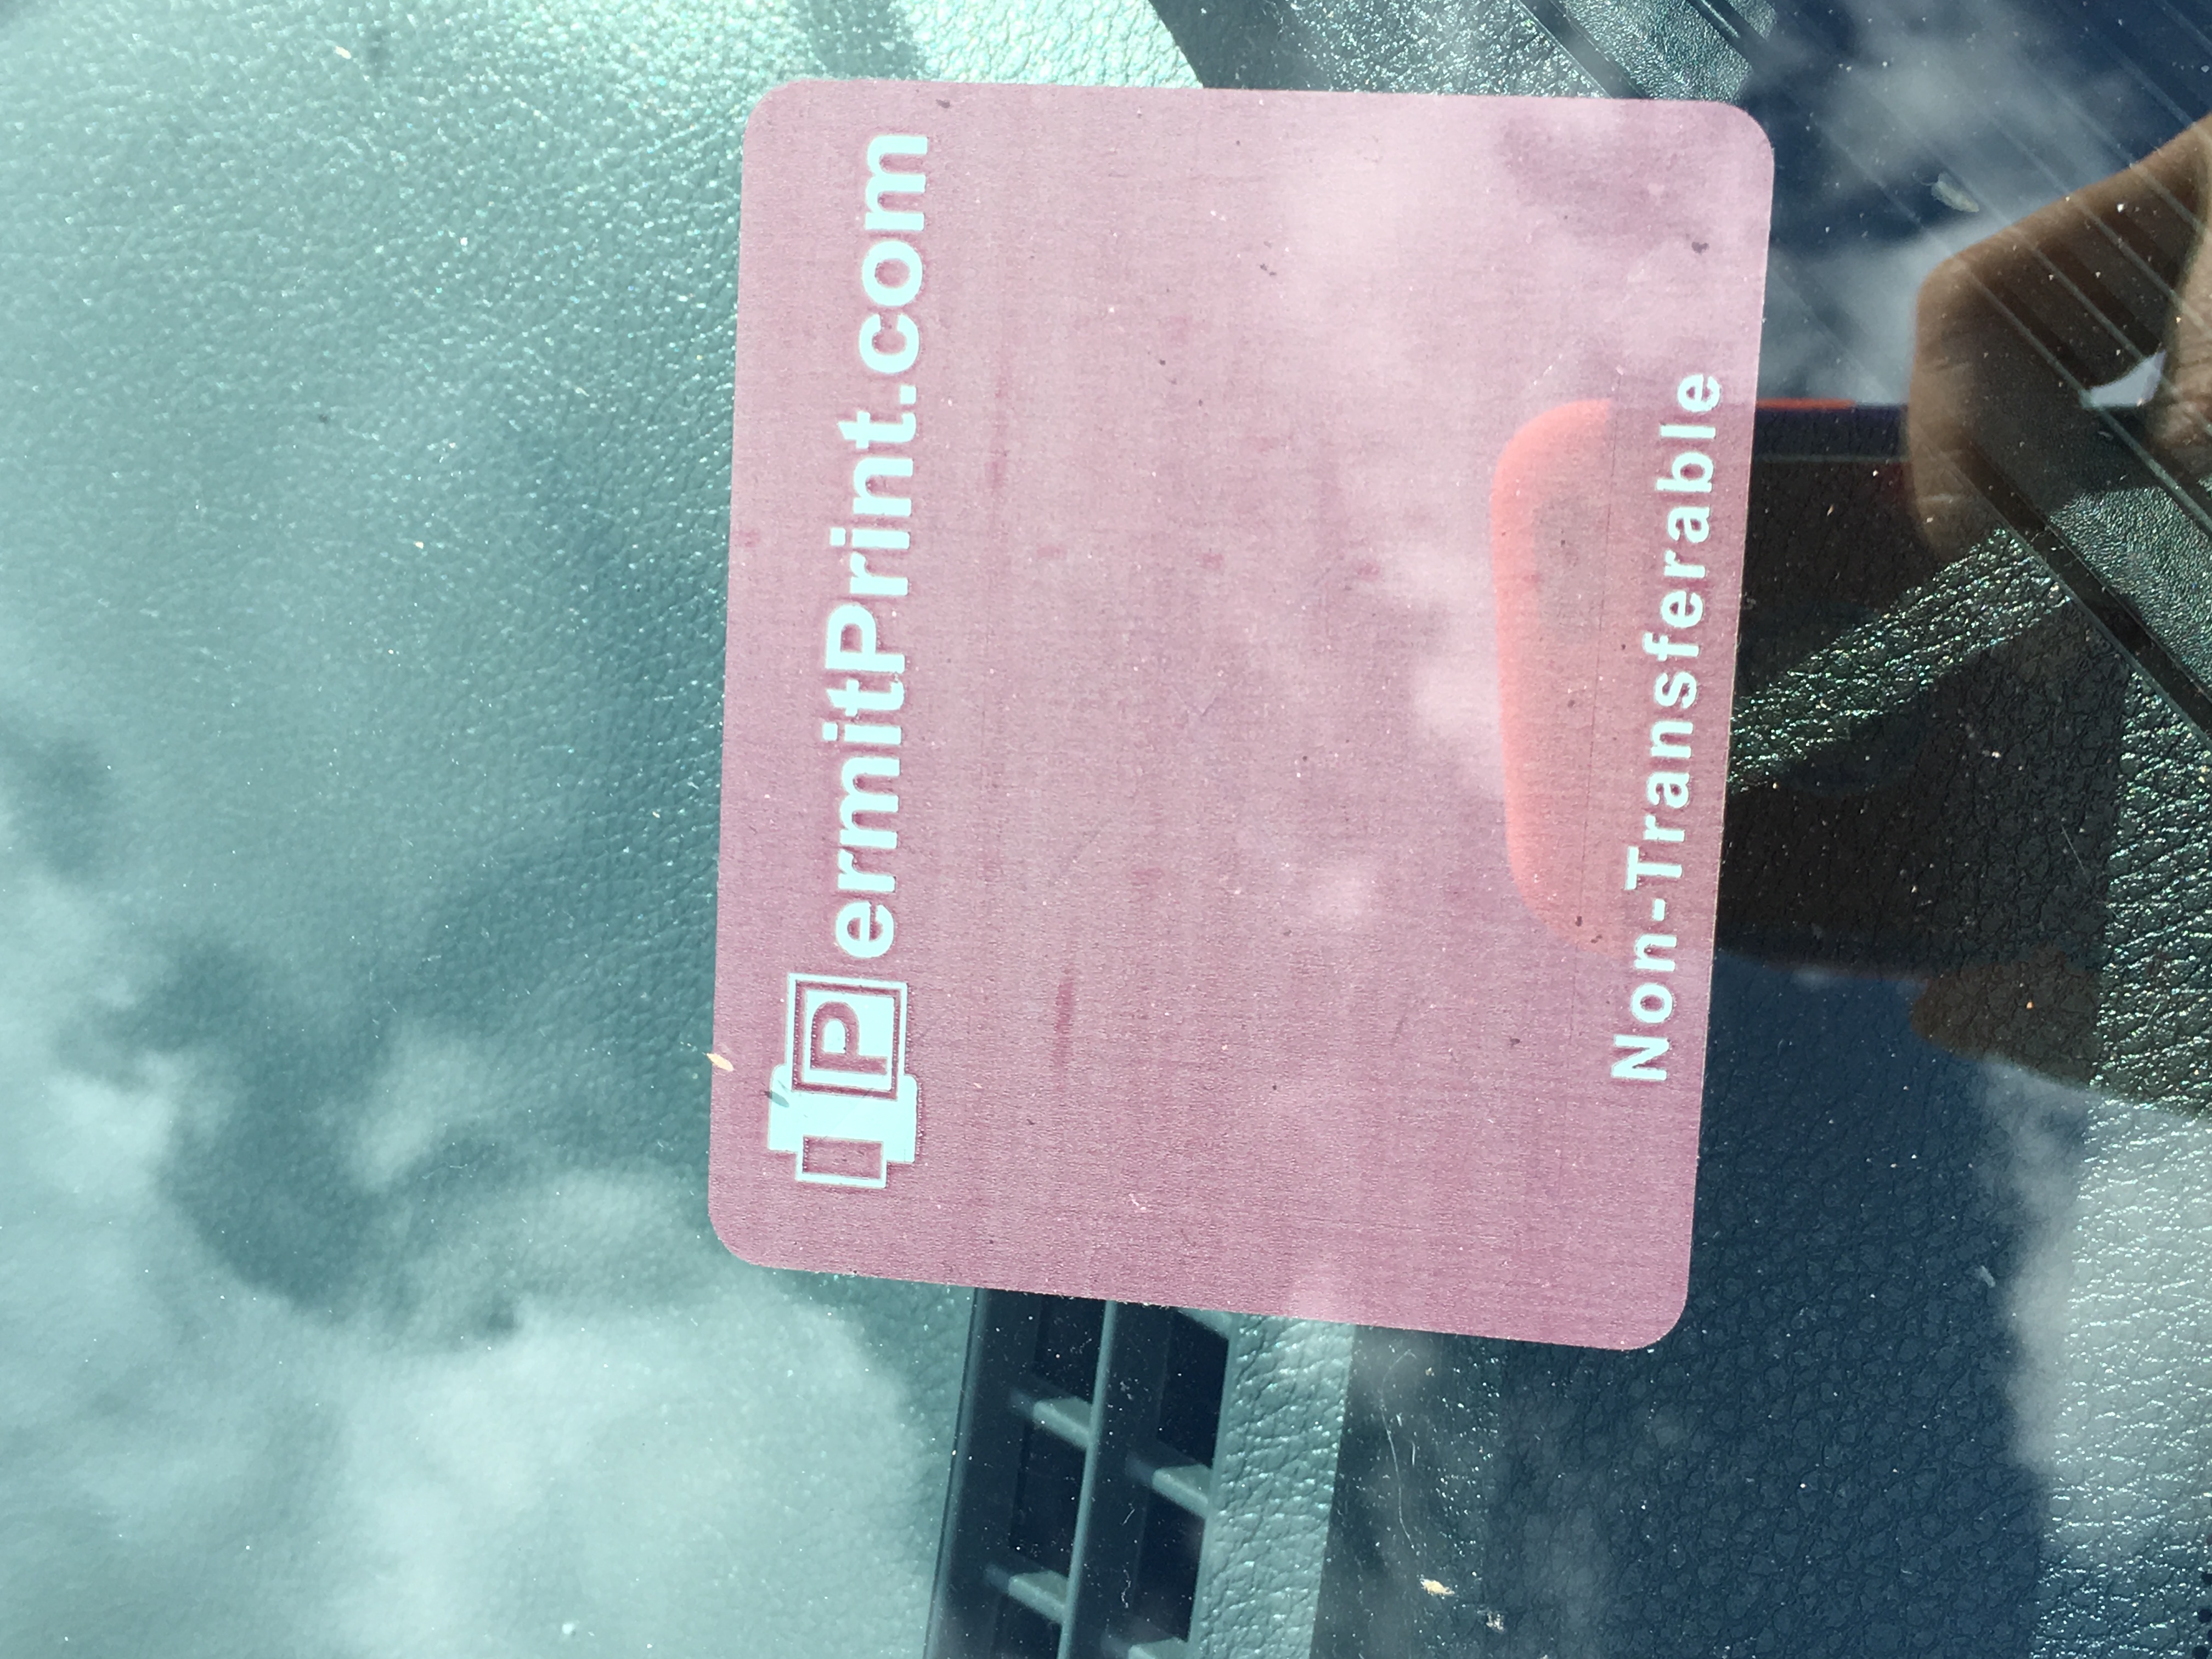 Permit windshield sticker